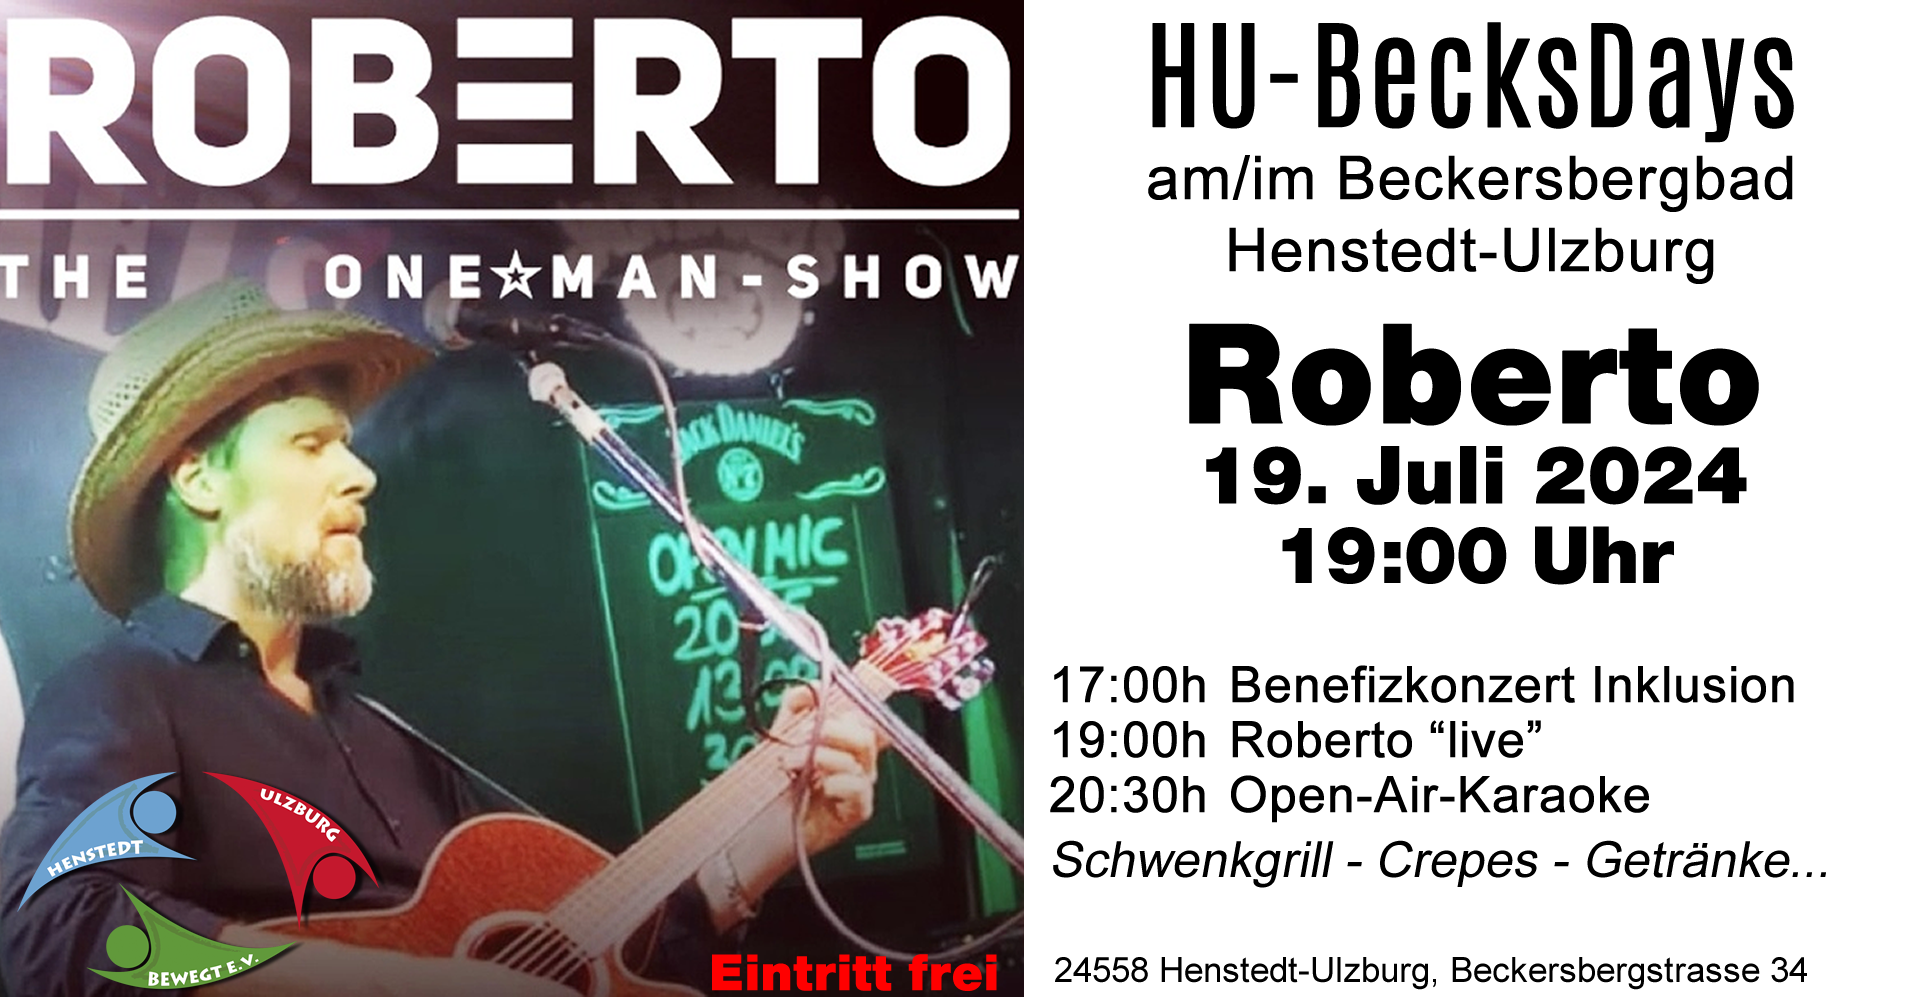 HU-BecksDays - Roberto "live" um 19 Uhr am 19.07.2024